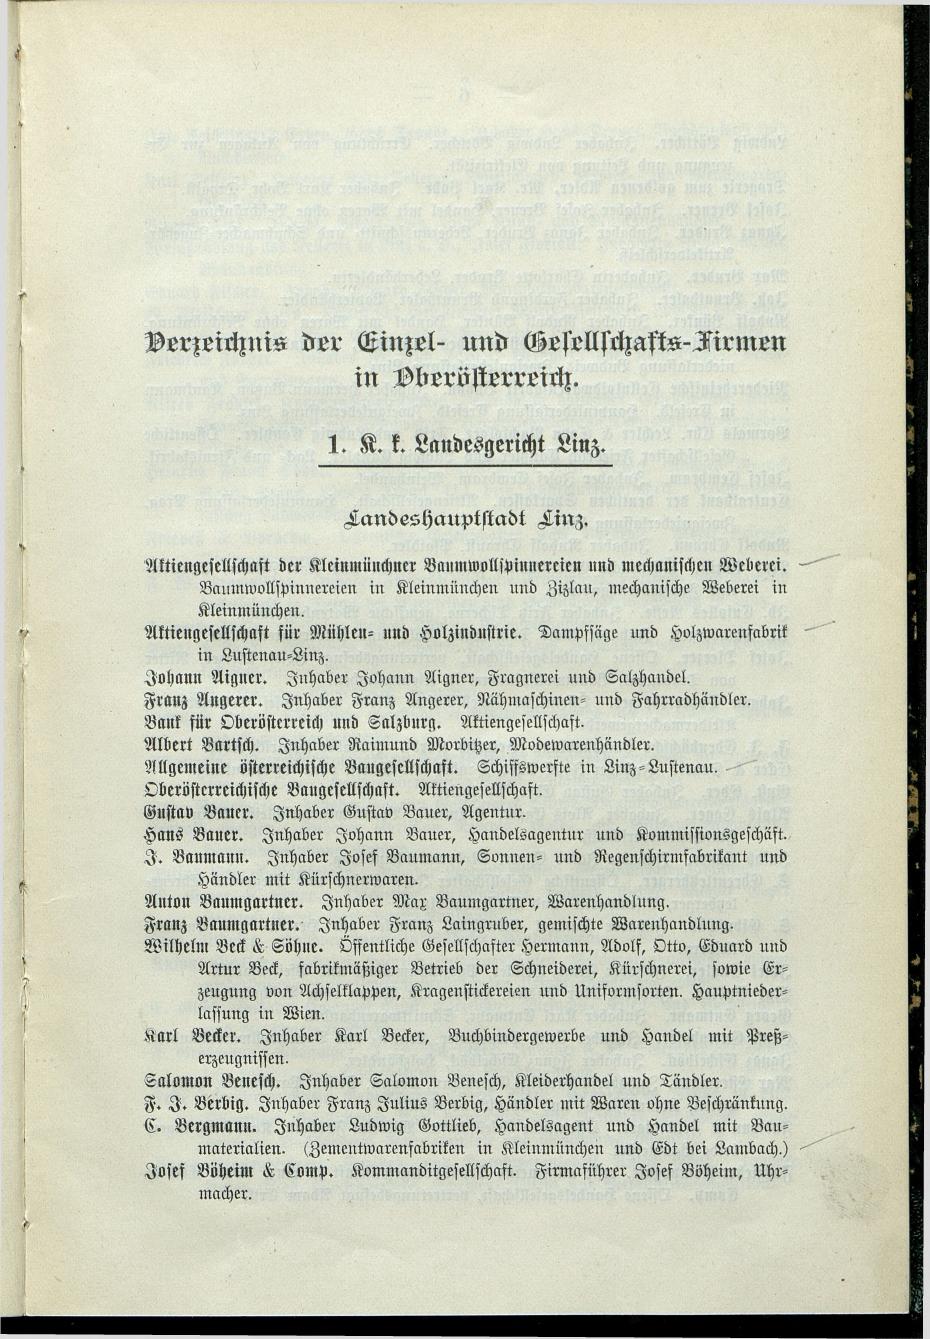 Verzeichnis der protokollierten Firmen und Genossenschaften in Oberösterreich 1908 - Seite 9